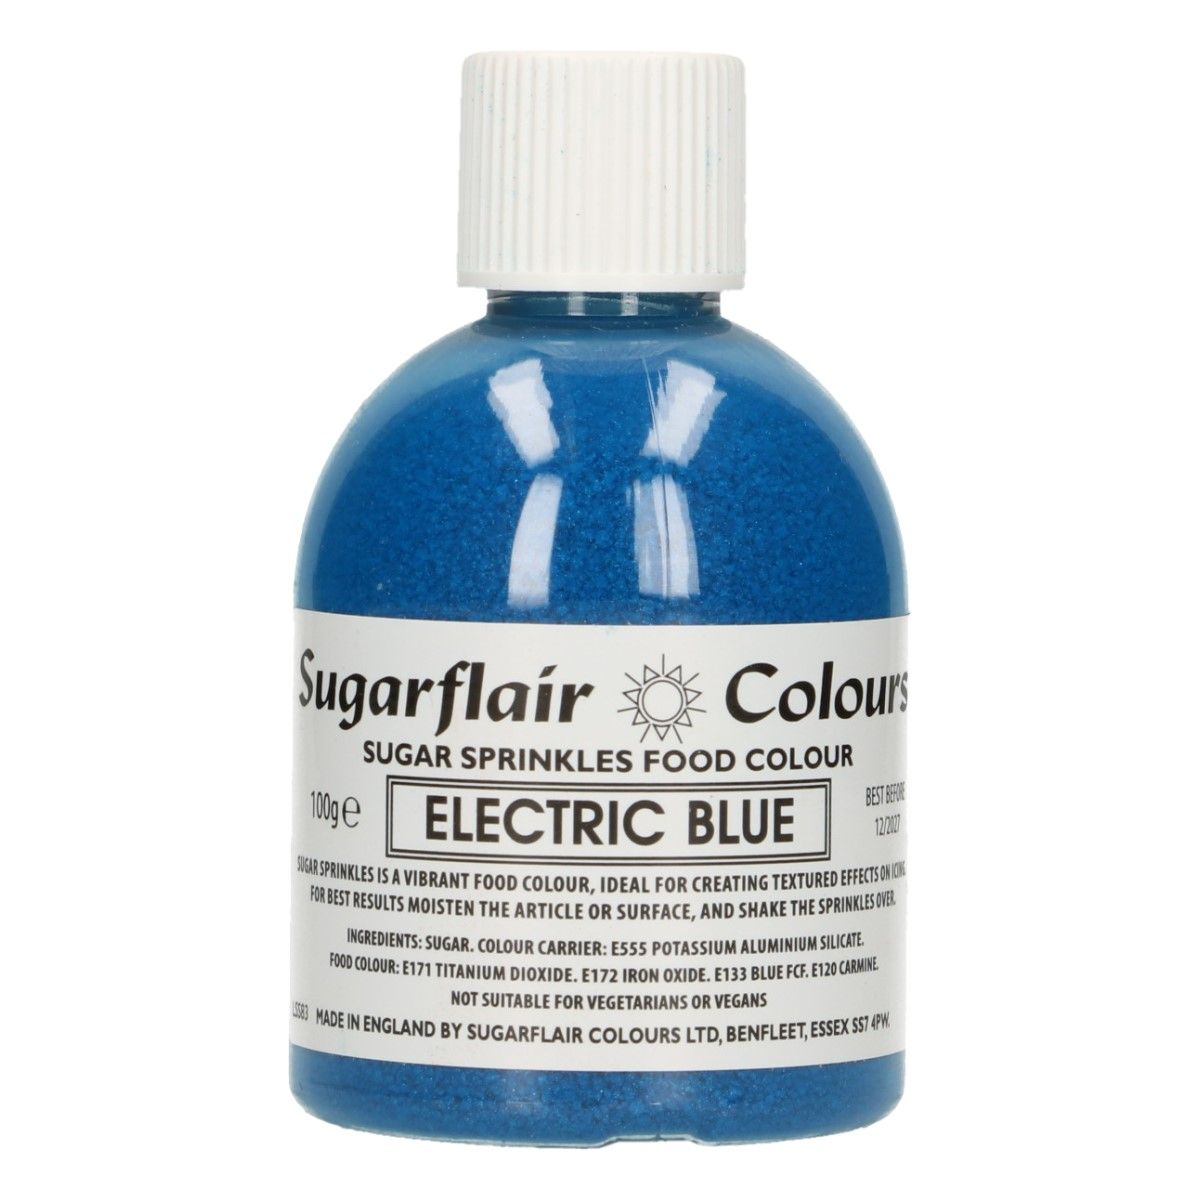 SUGARFLAIR SUGAR SPRINKLES -ELECTRIC BLUE- 100G